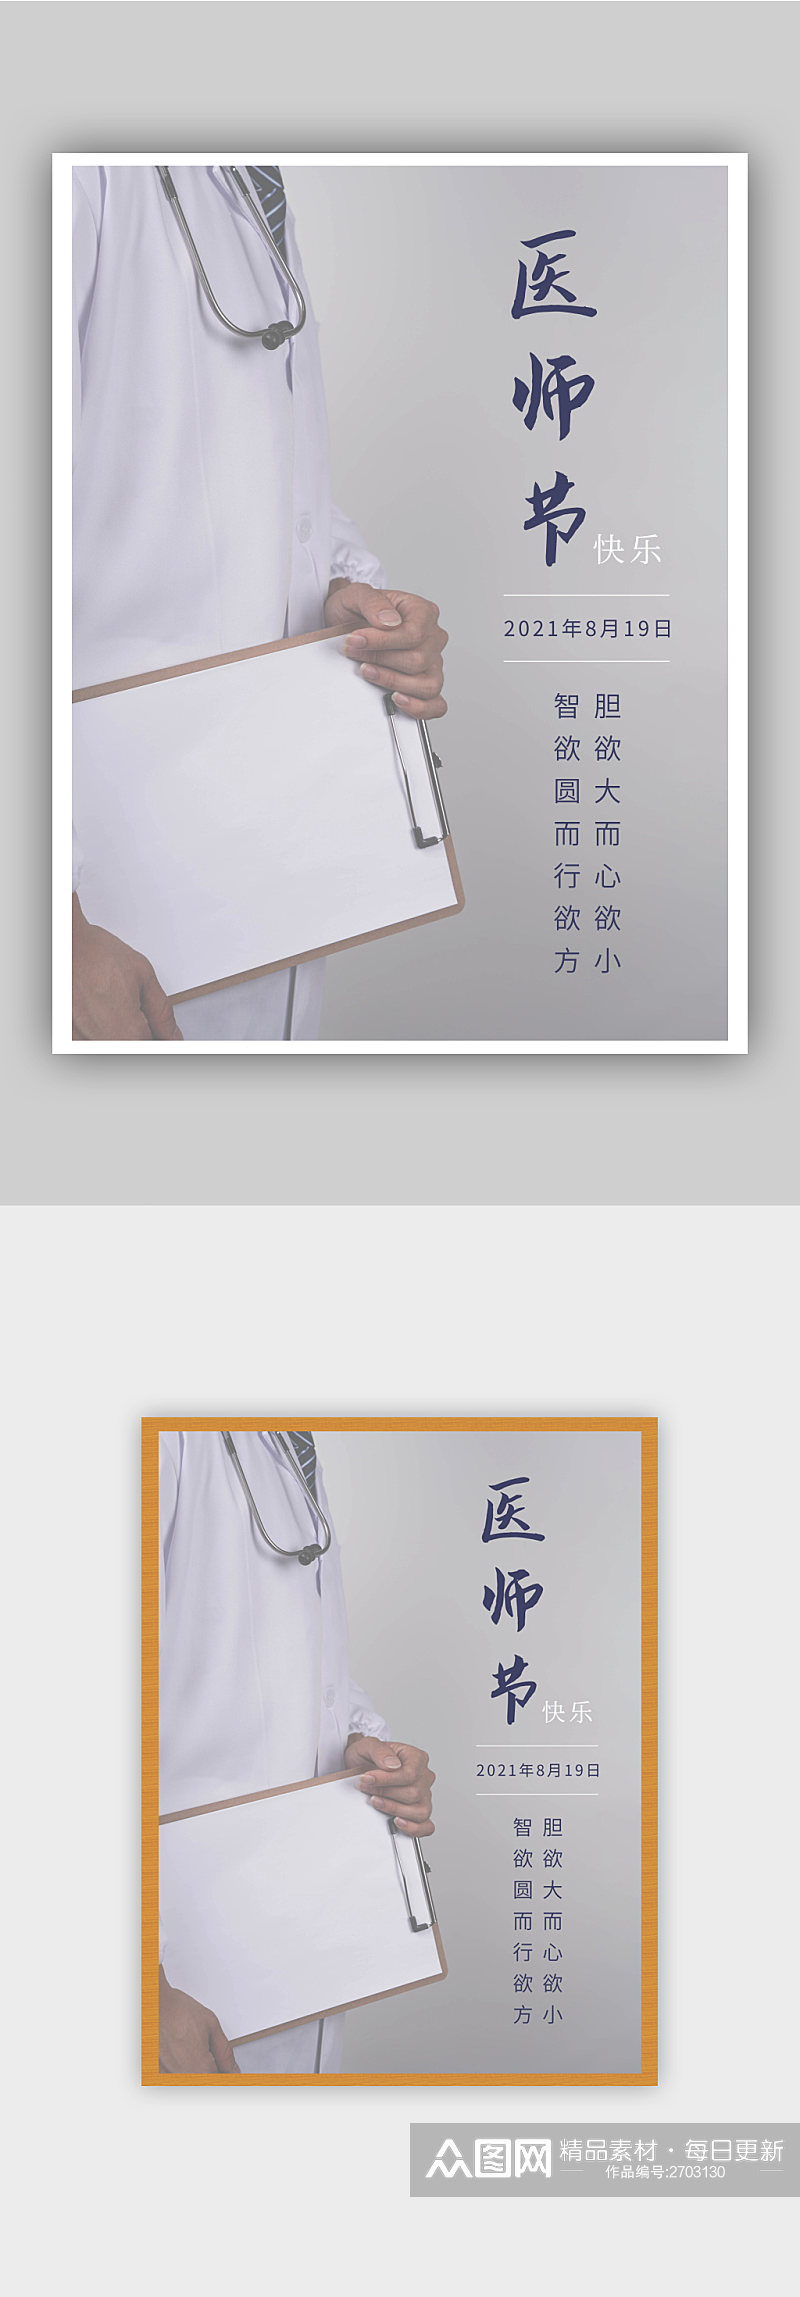 中国医师节摄影图节日海报素材